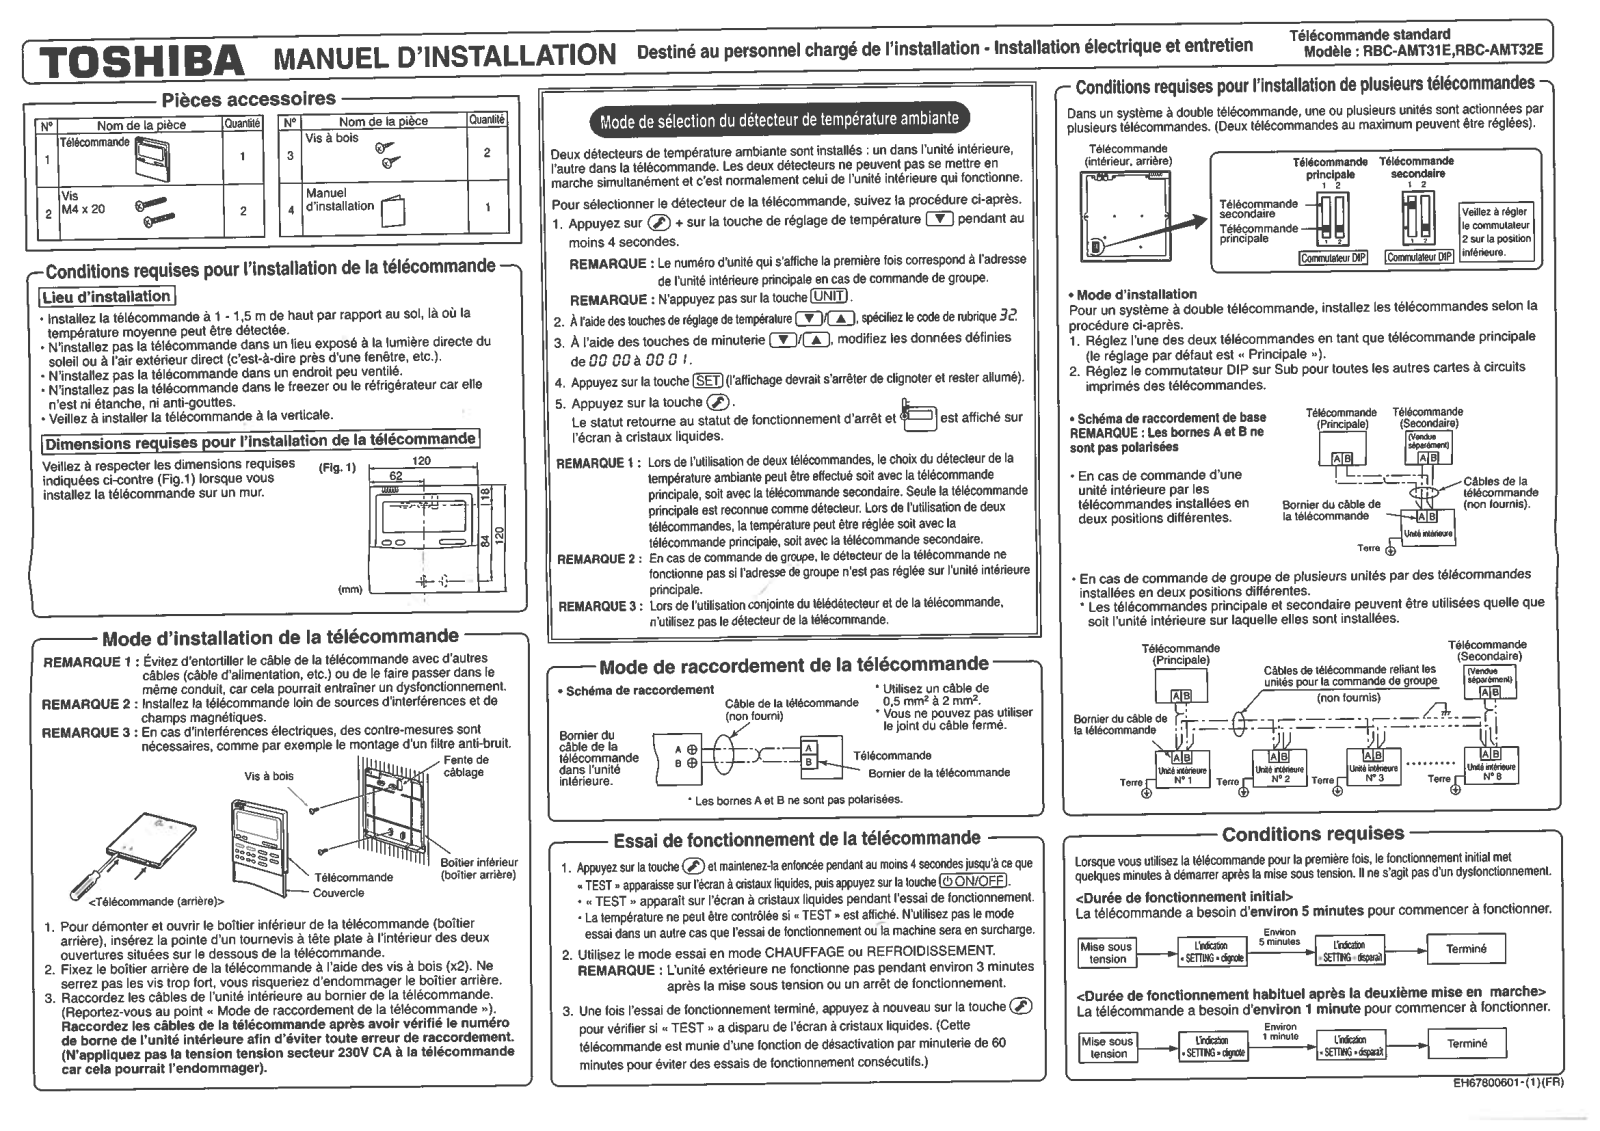 TOSHIBA RBC-AMT32E User Manual